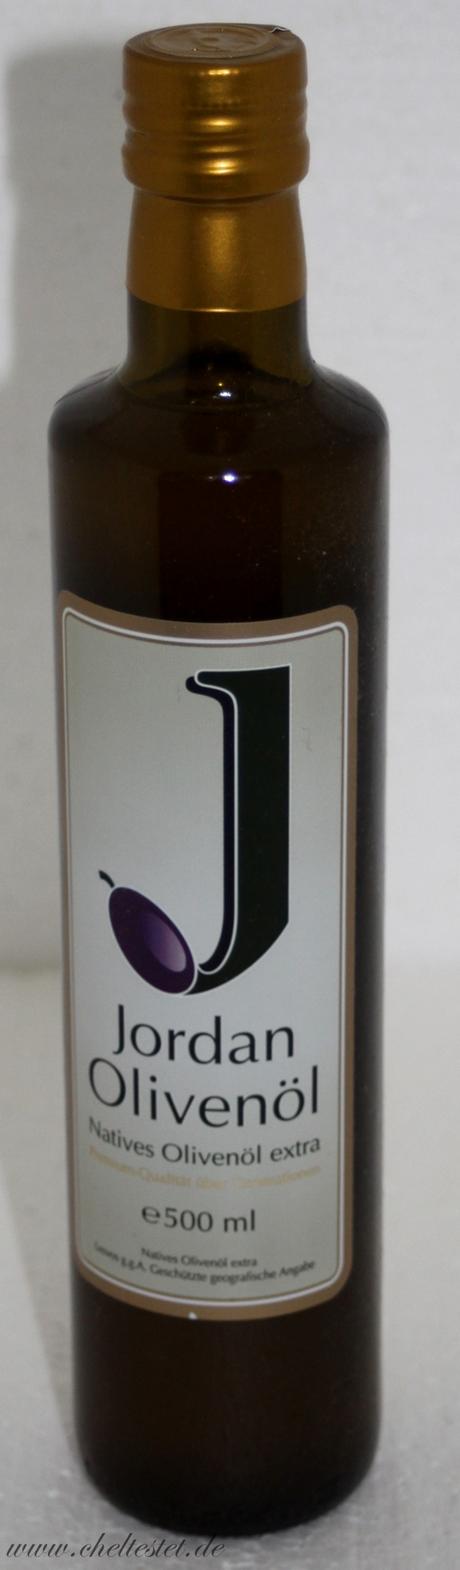 Jordan Olivenöl – natives Olivenöl extra